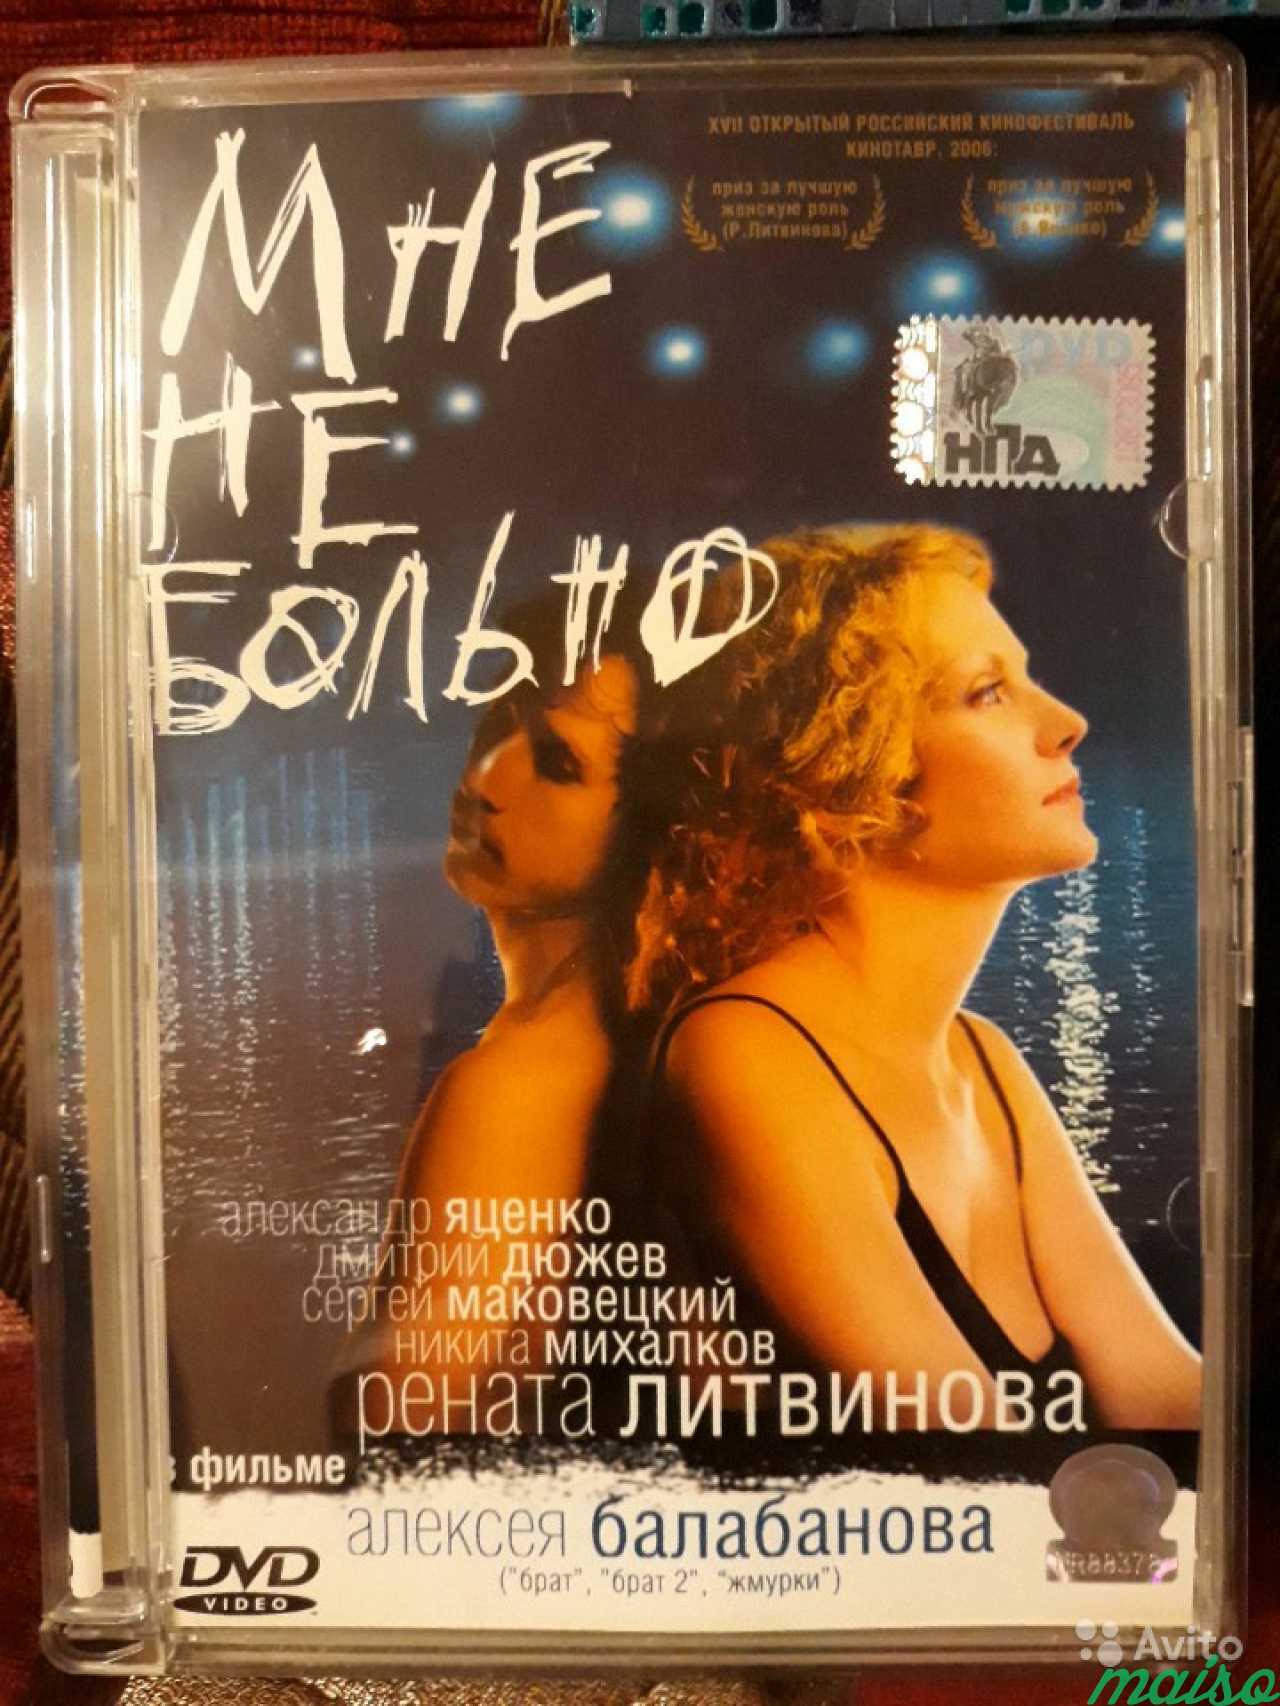 Фильмы на dvd в Санкт-Петербурге. Фото 3